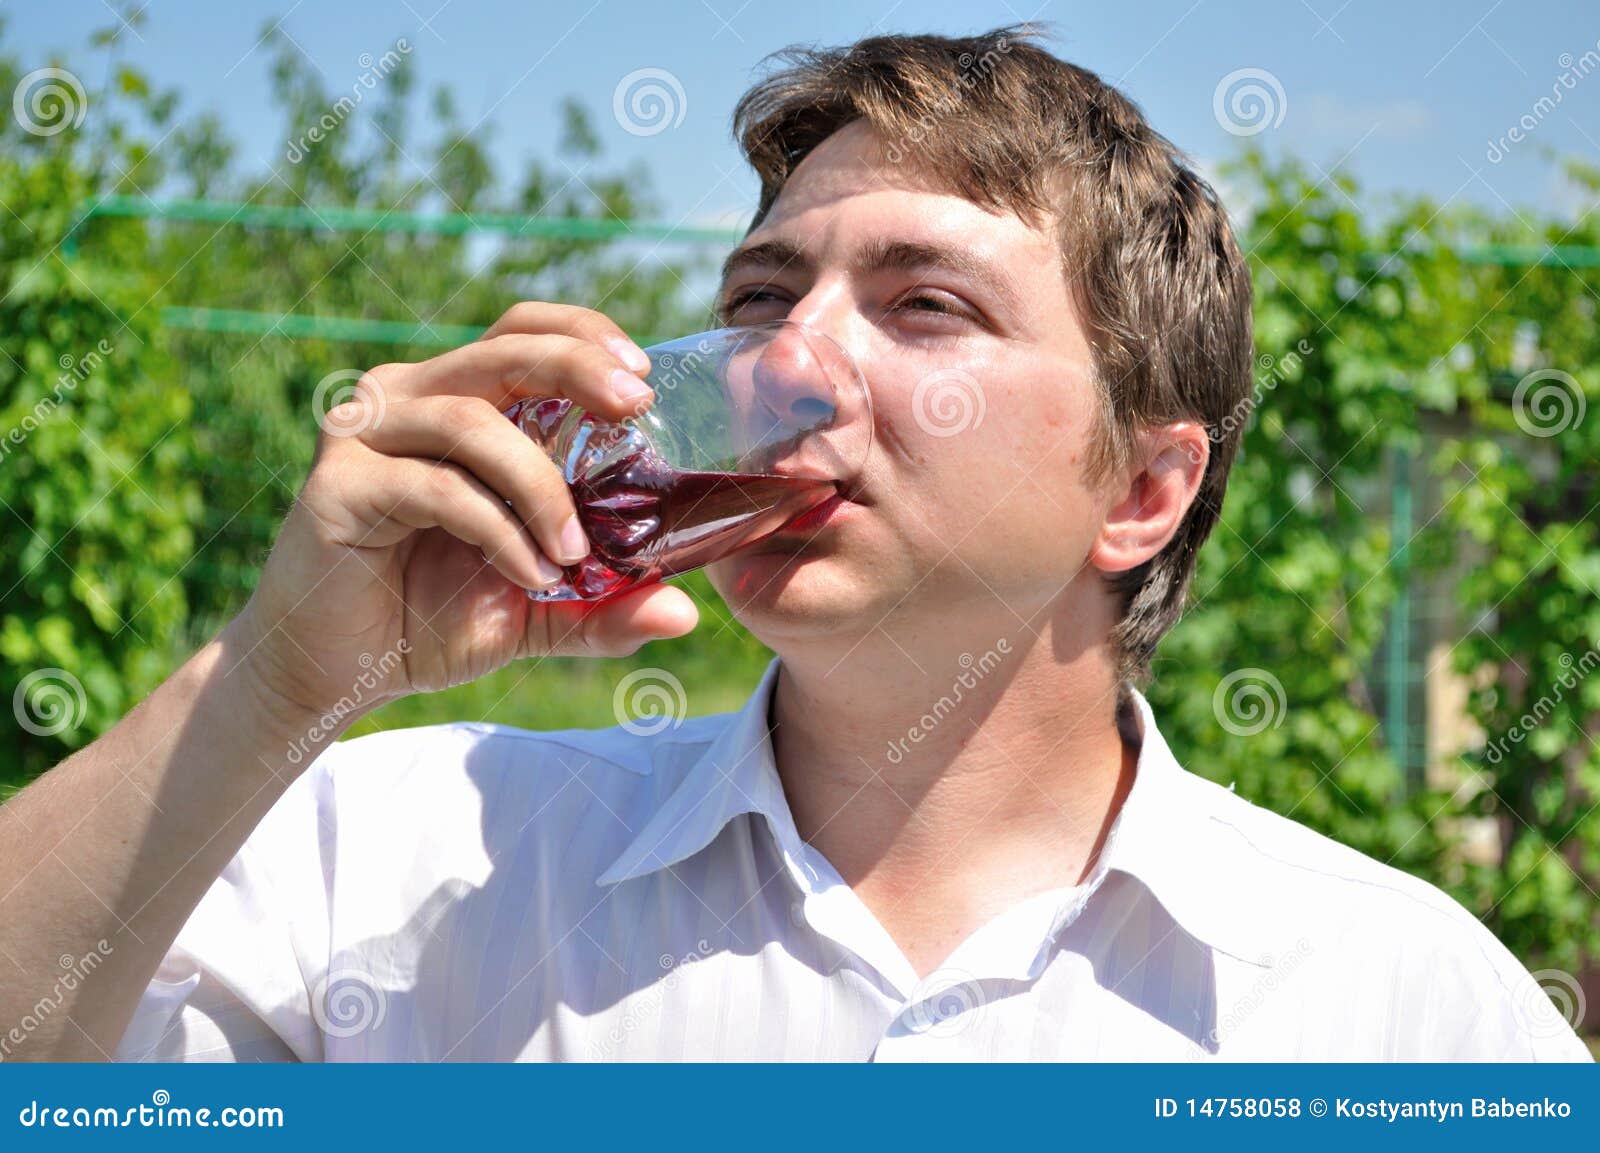 С удовольствием пьют. Мужчина с соком. Человек пьющий сок. Мужчина пьет сок из стакана. Мужчина пьет из стакана.